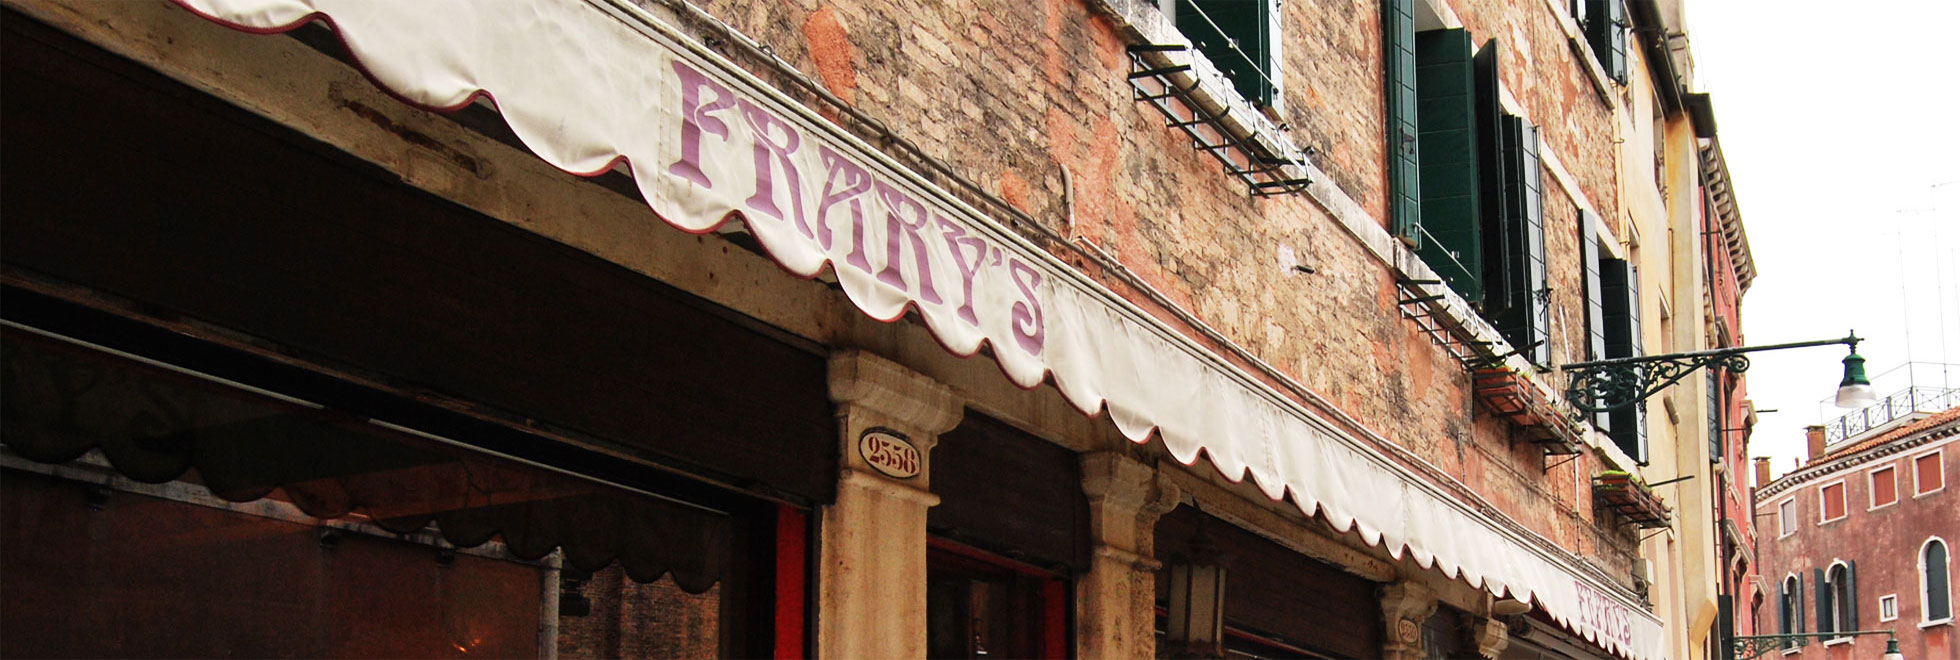 ristorante vegano a venezia